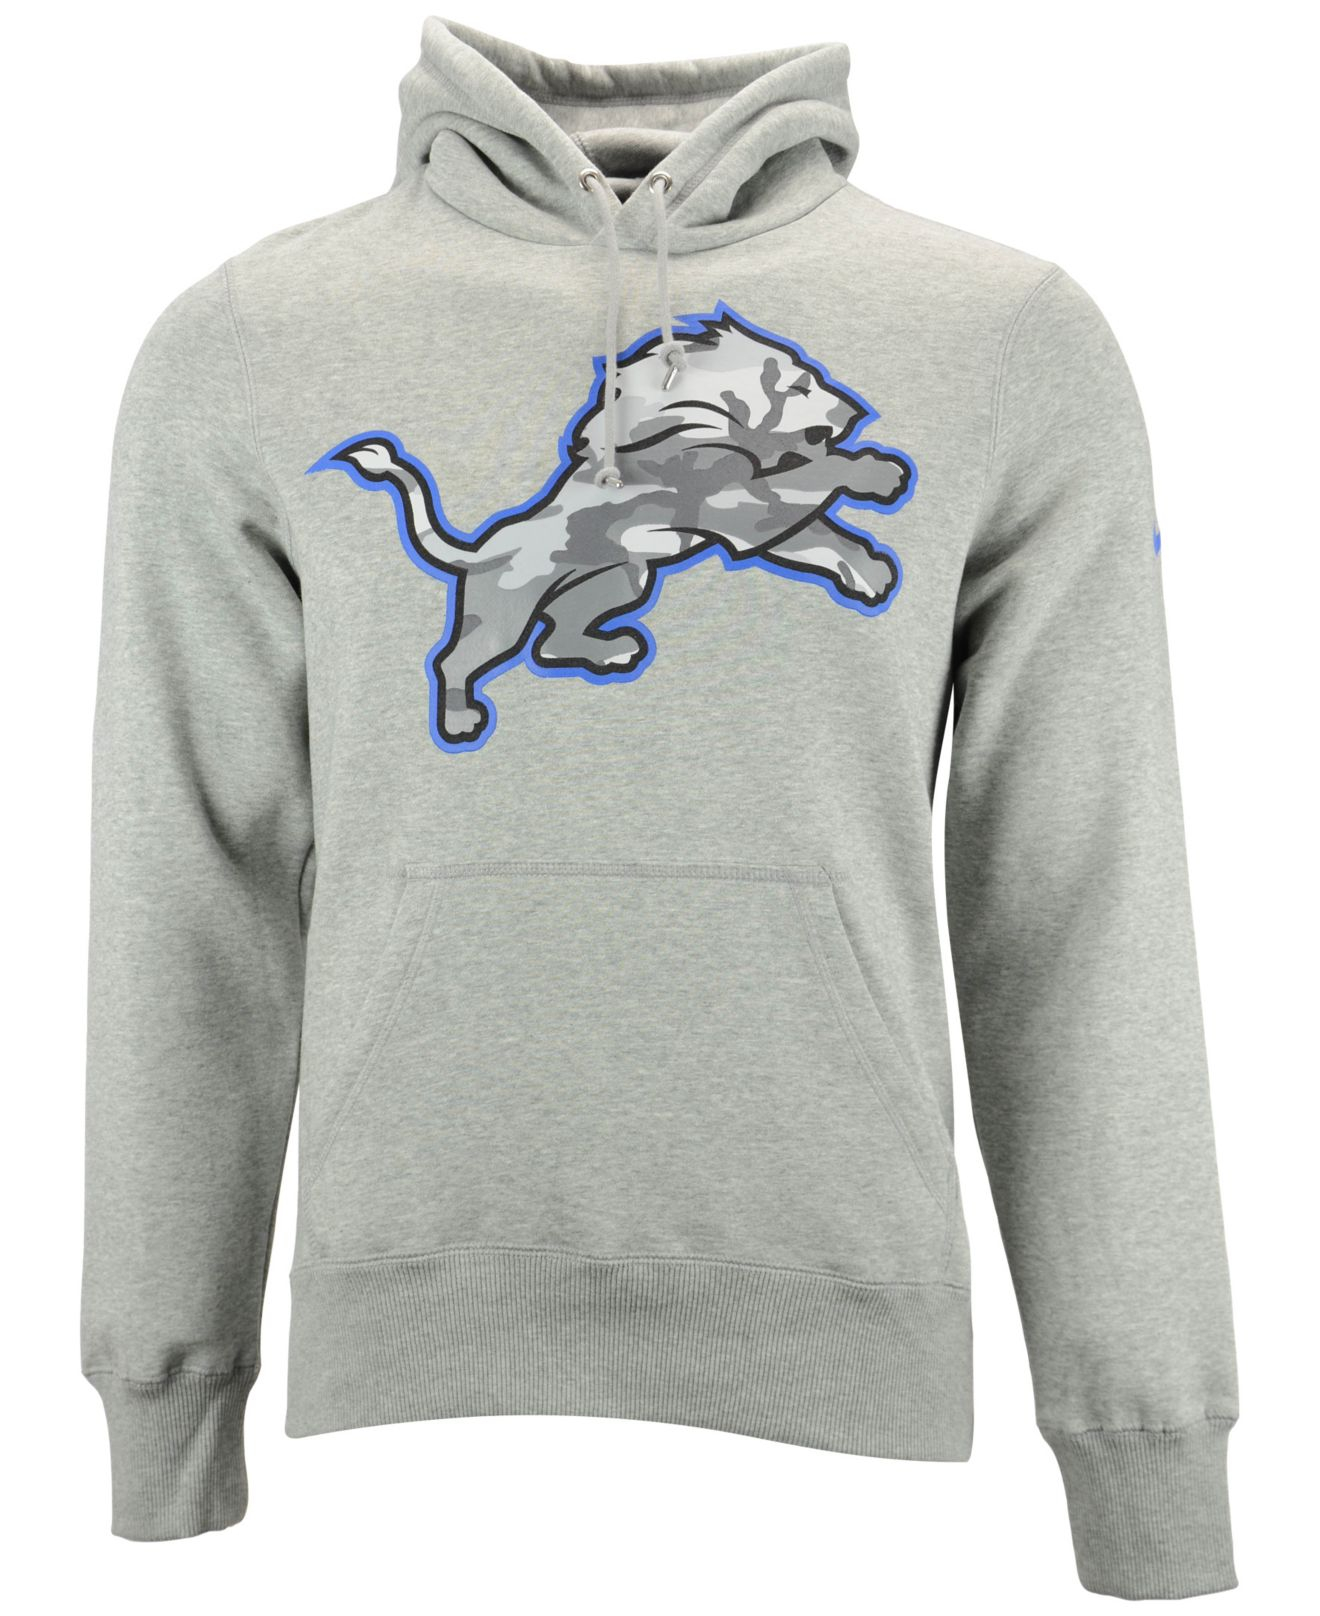 detroit lions hoodie